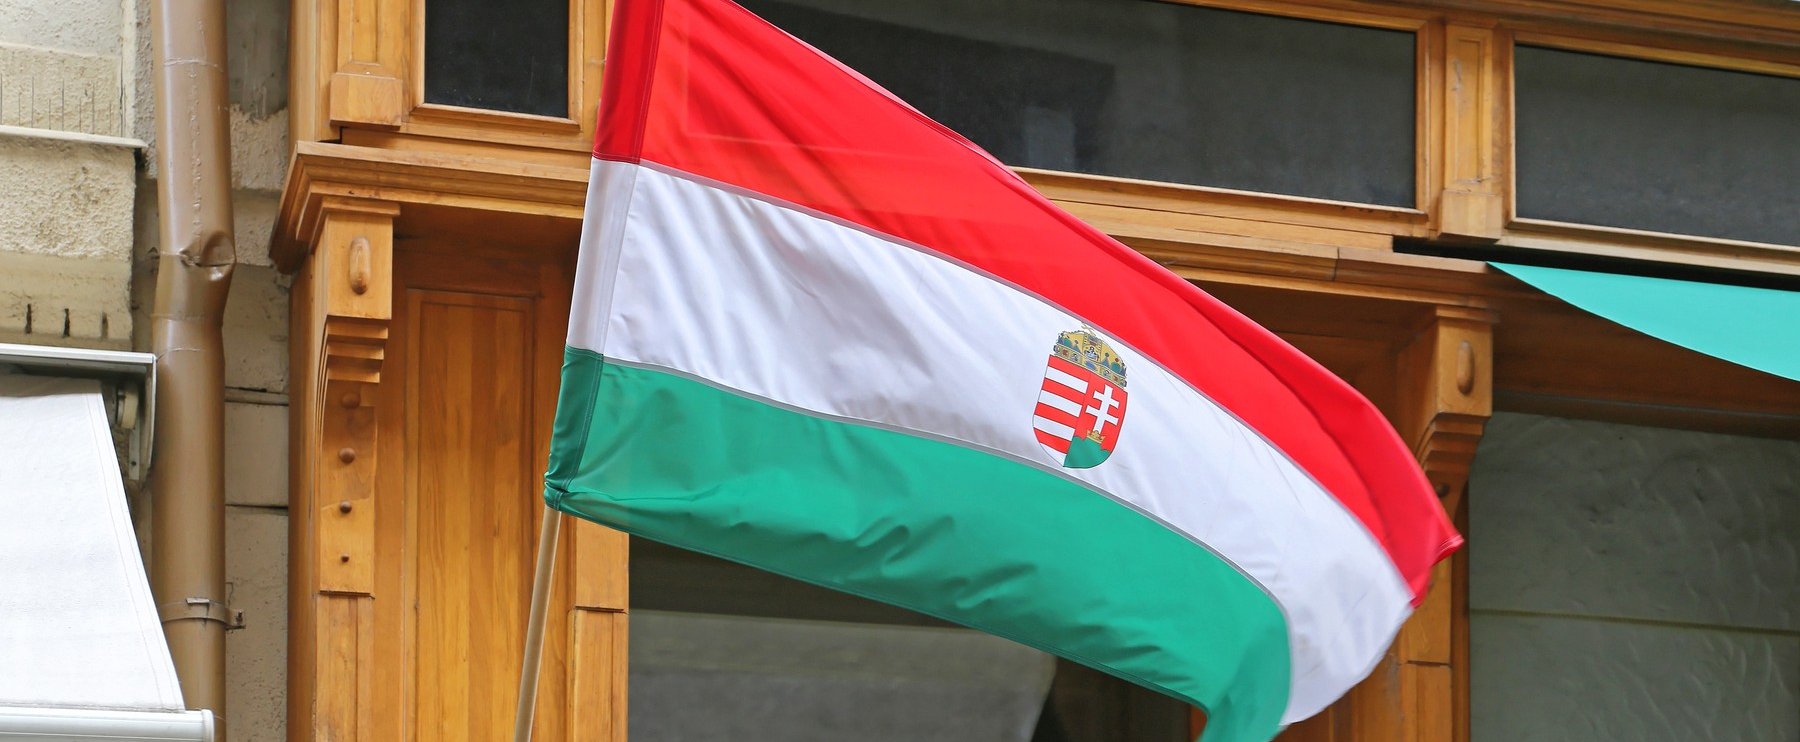 Irgalmatlanul fura kép terjed Magyarországról egy külföldi oldalon, azonnal tudni akarjuk, hogy mi állhat a háttérben